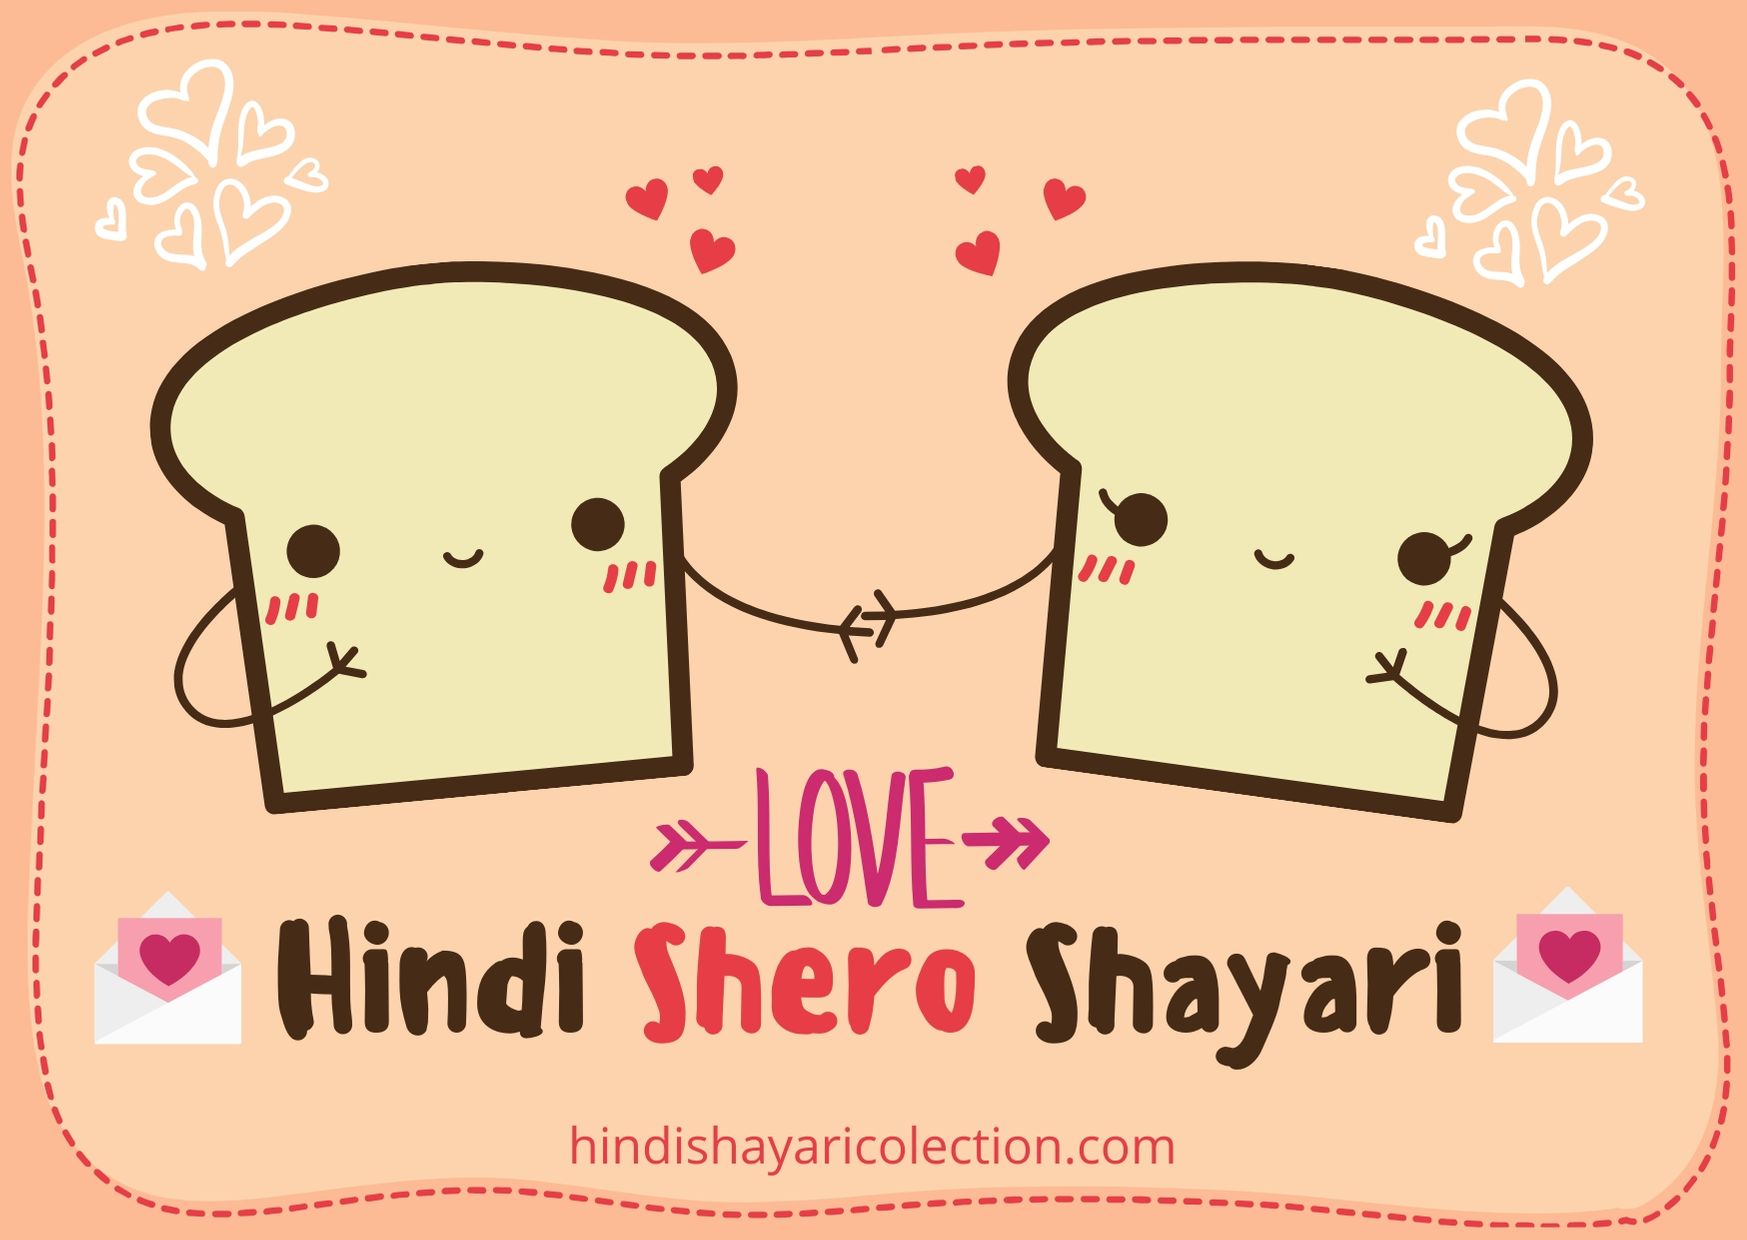 Hindi Shero Shayari Hindi Shero Shayari on Love हिन्दी शायरी